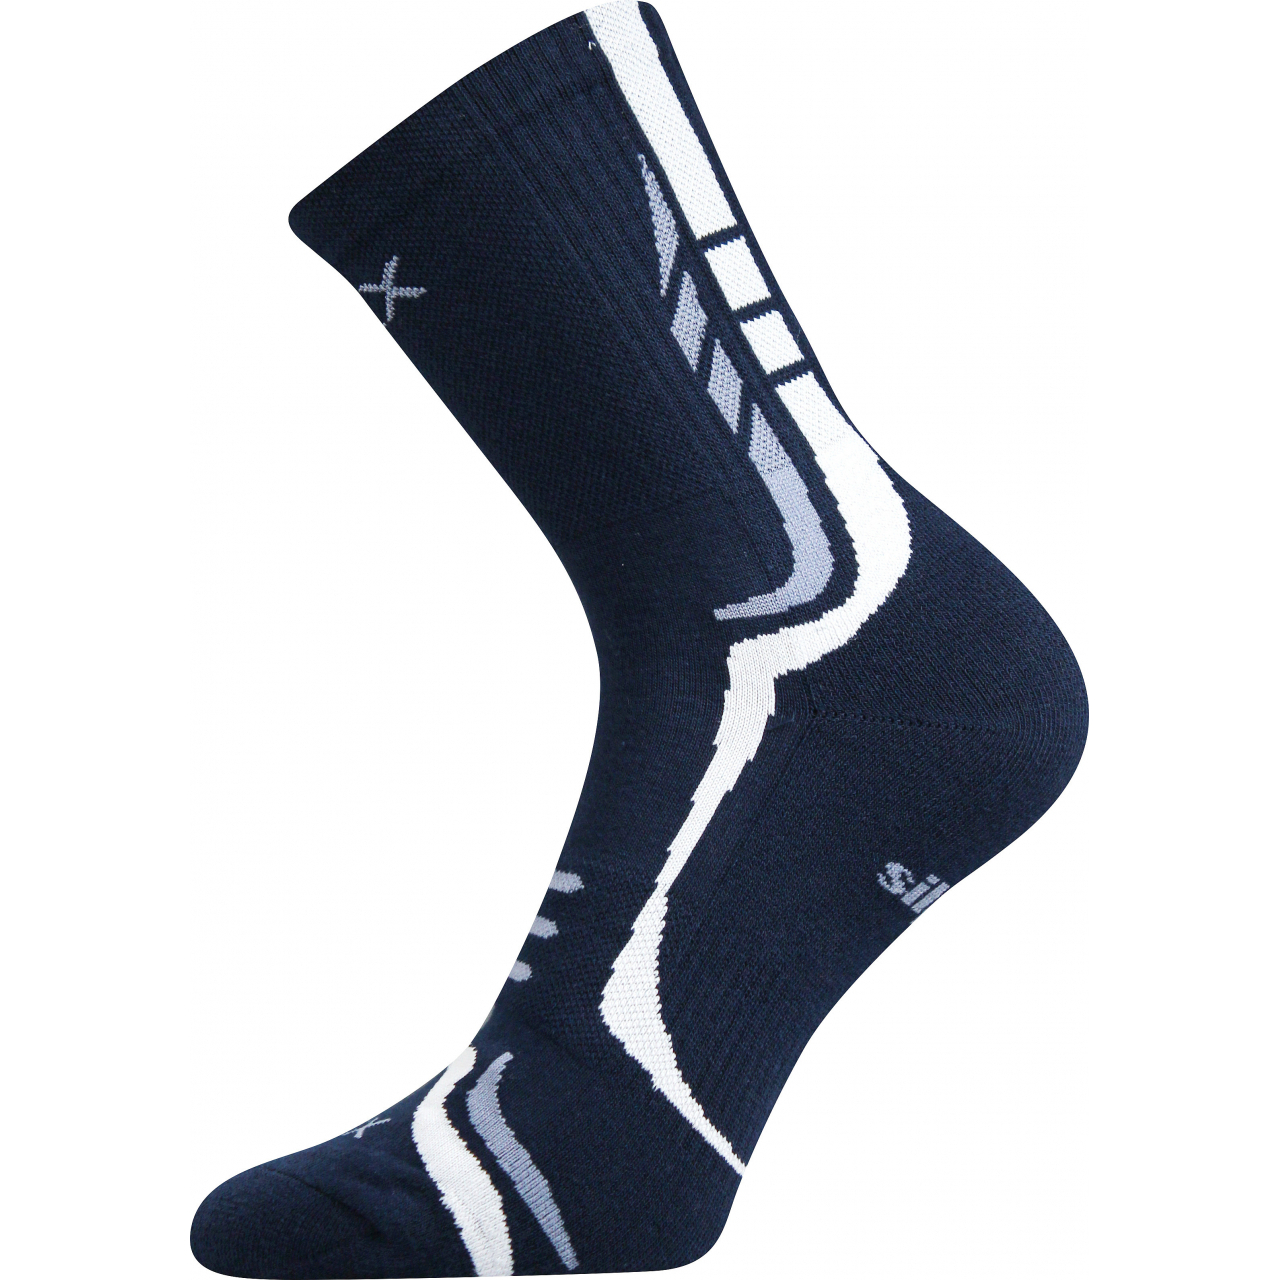 Ponožky unisex sportovní Voxx Thorx - navy-bílé, 35-38